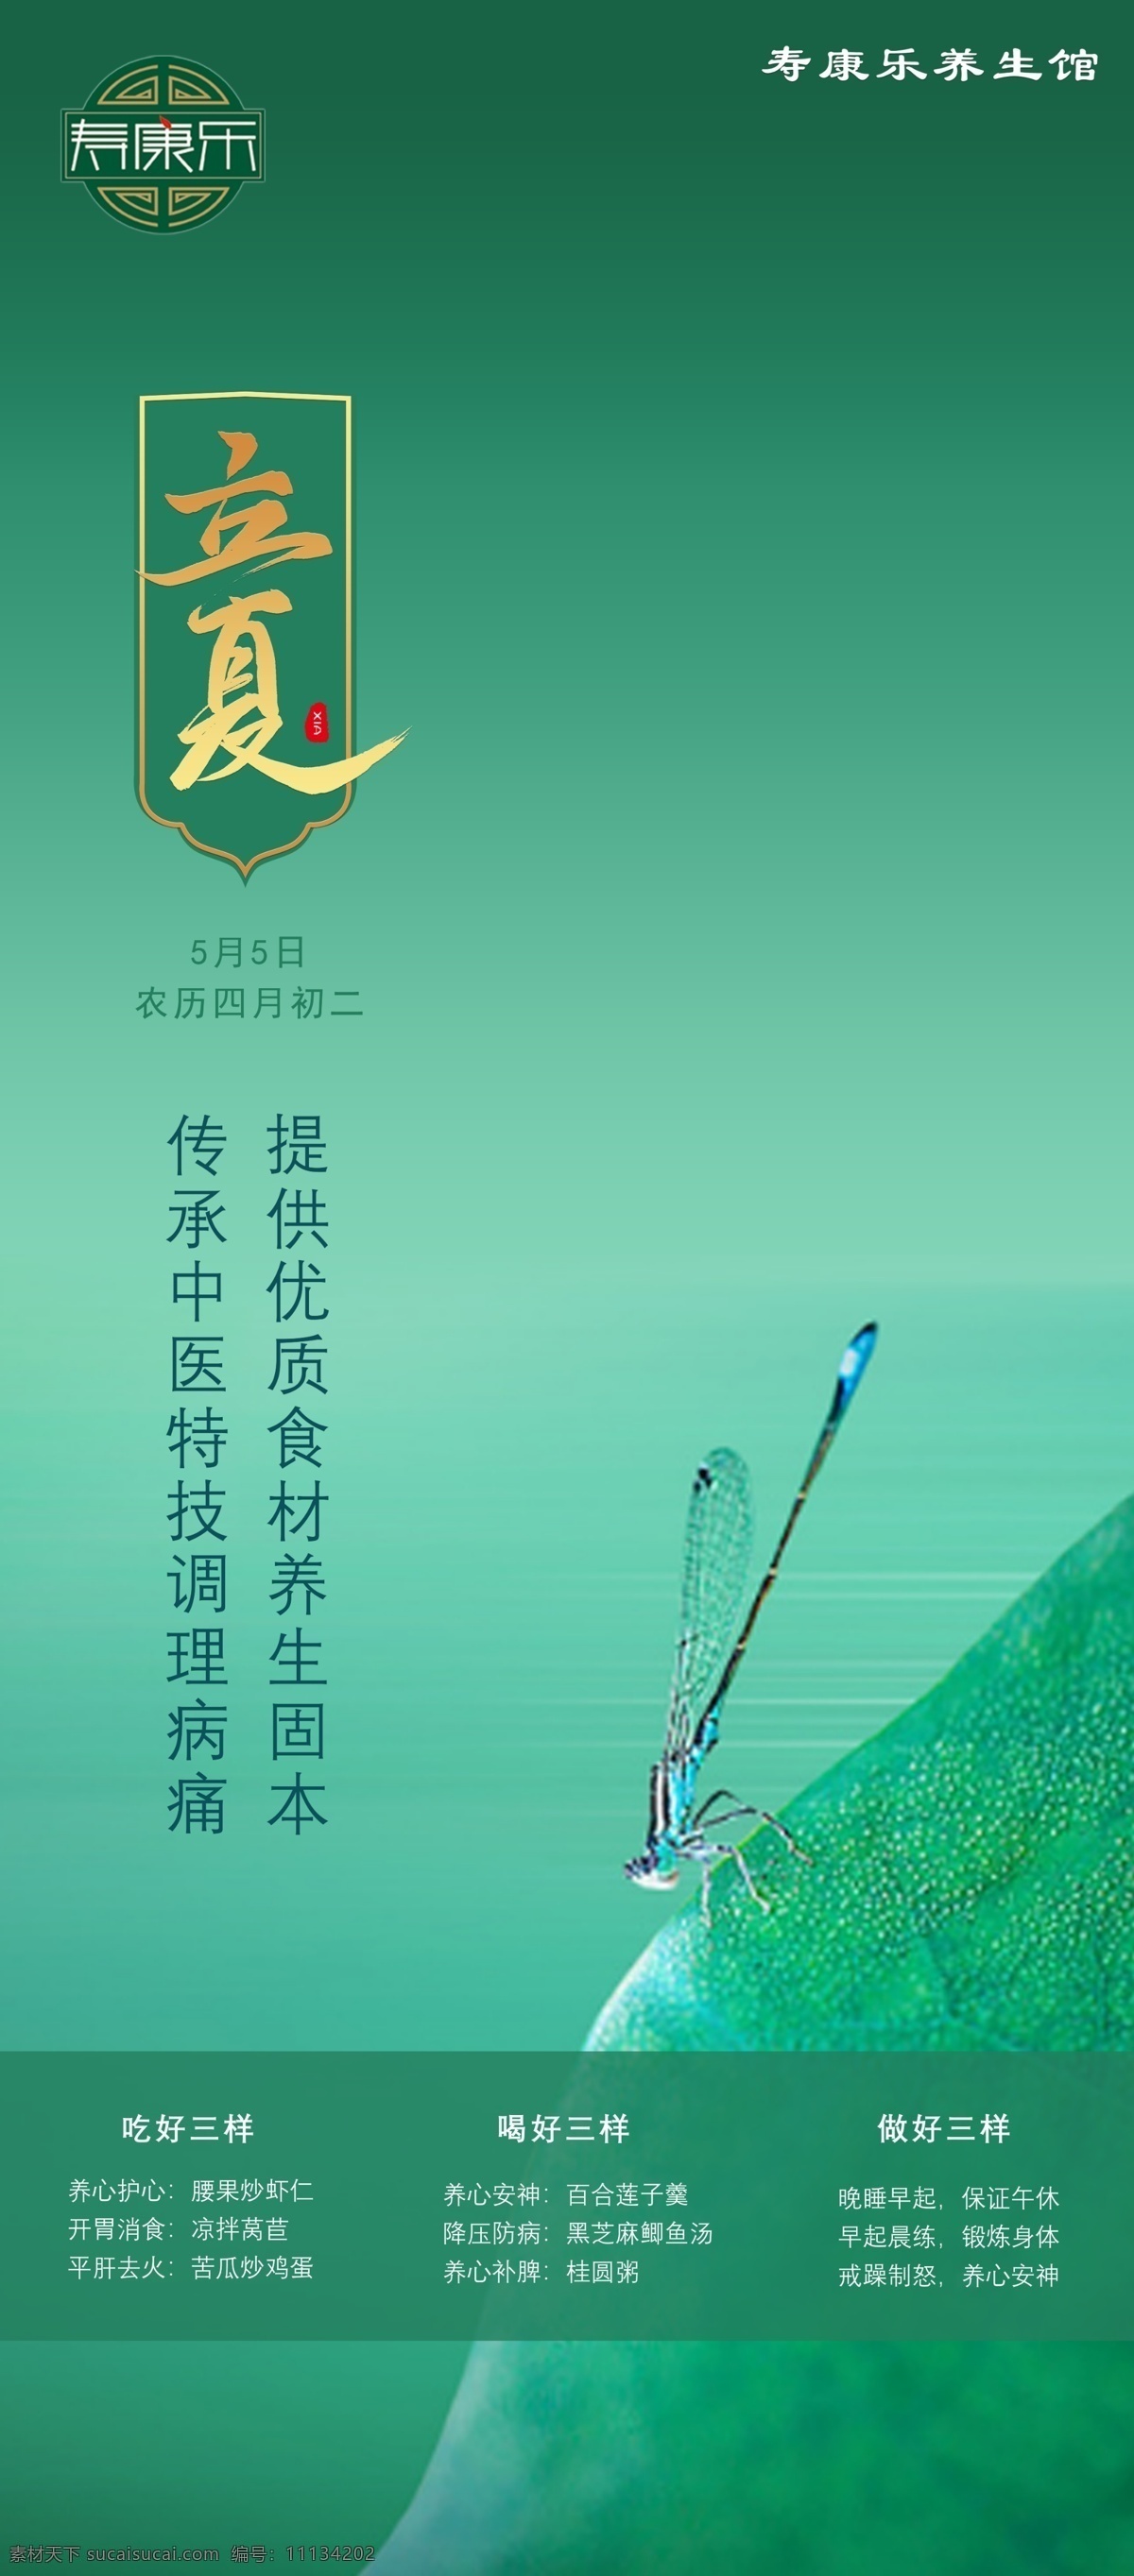 立夏 海报 易拉宝 蜻蜓 清新 养生 荷叶 绿色 分层